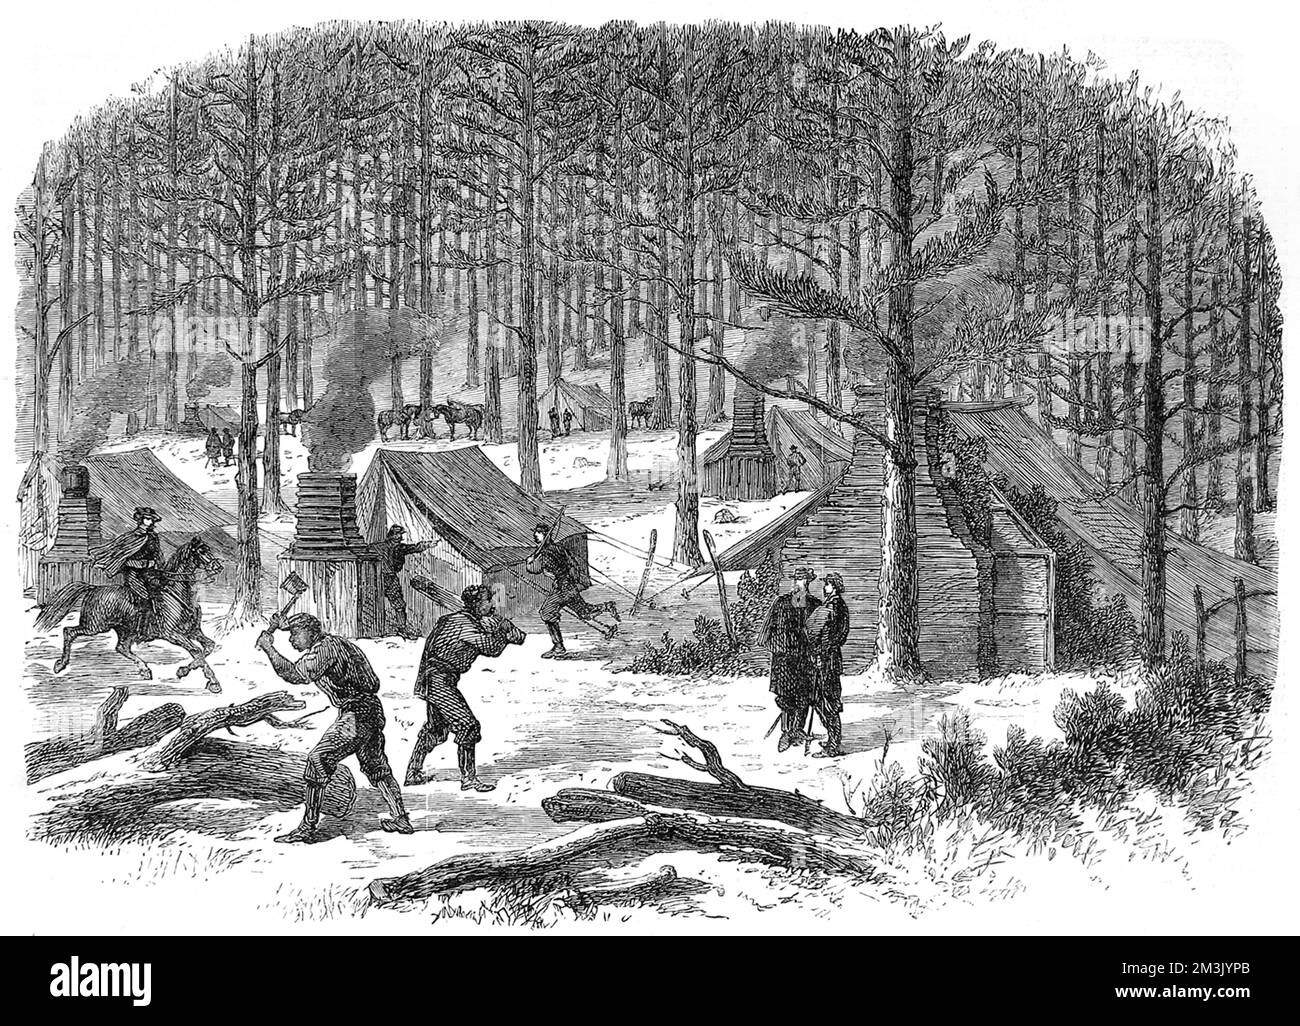 Die Abbildung zeigt General Stuarts Hauptquartier am Rapidan River; eine dickbewaldete Szene, in der Soldaten Bäume Fällen und Baumstämme hacken. Zu dieser Zeit versuchte die Armee der Konföderierten, sich nach Pennsylvania zu drängen. Datum: 1864 Stockfoto